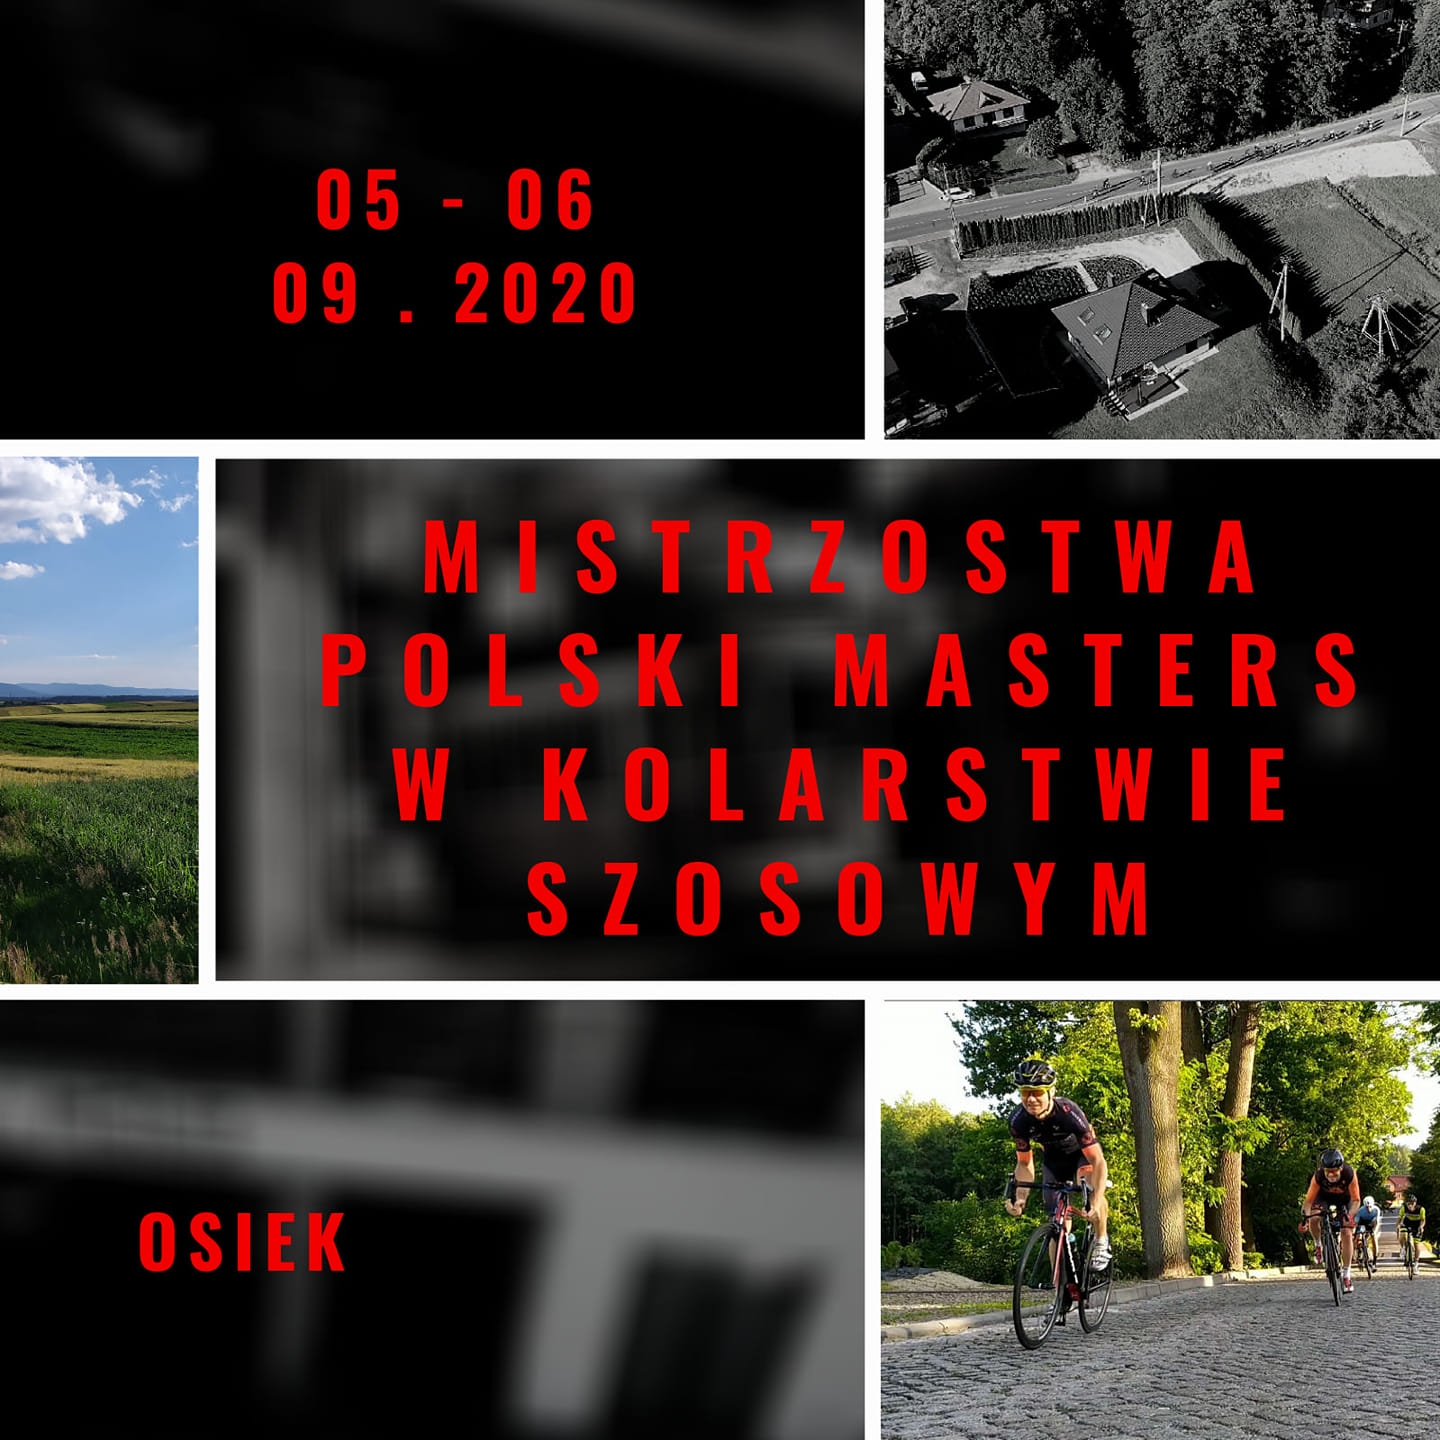 Mistrzostwa Polski Masters w kolarstwie szosowym Osiek małopolska powiat oświęcimski info oswiecim 2020 powiat oświęcimski info oswiecim